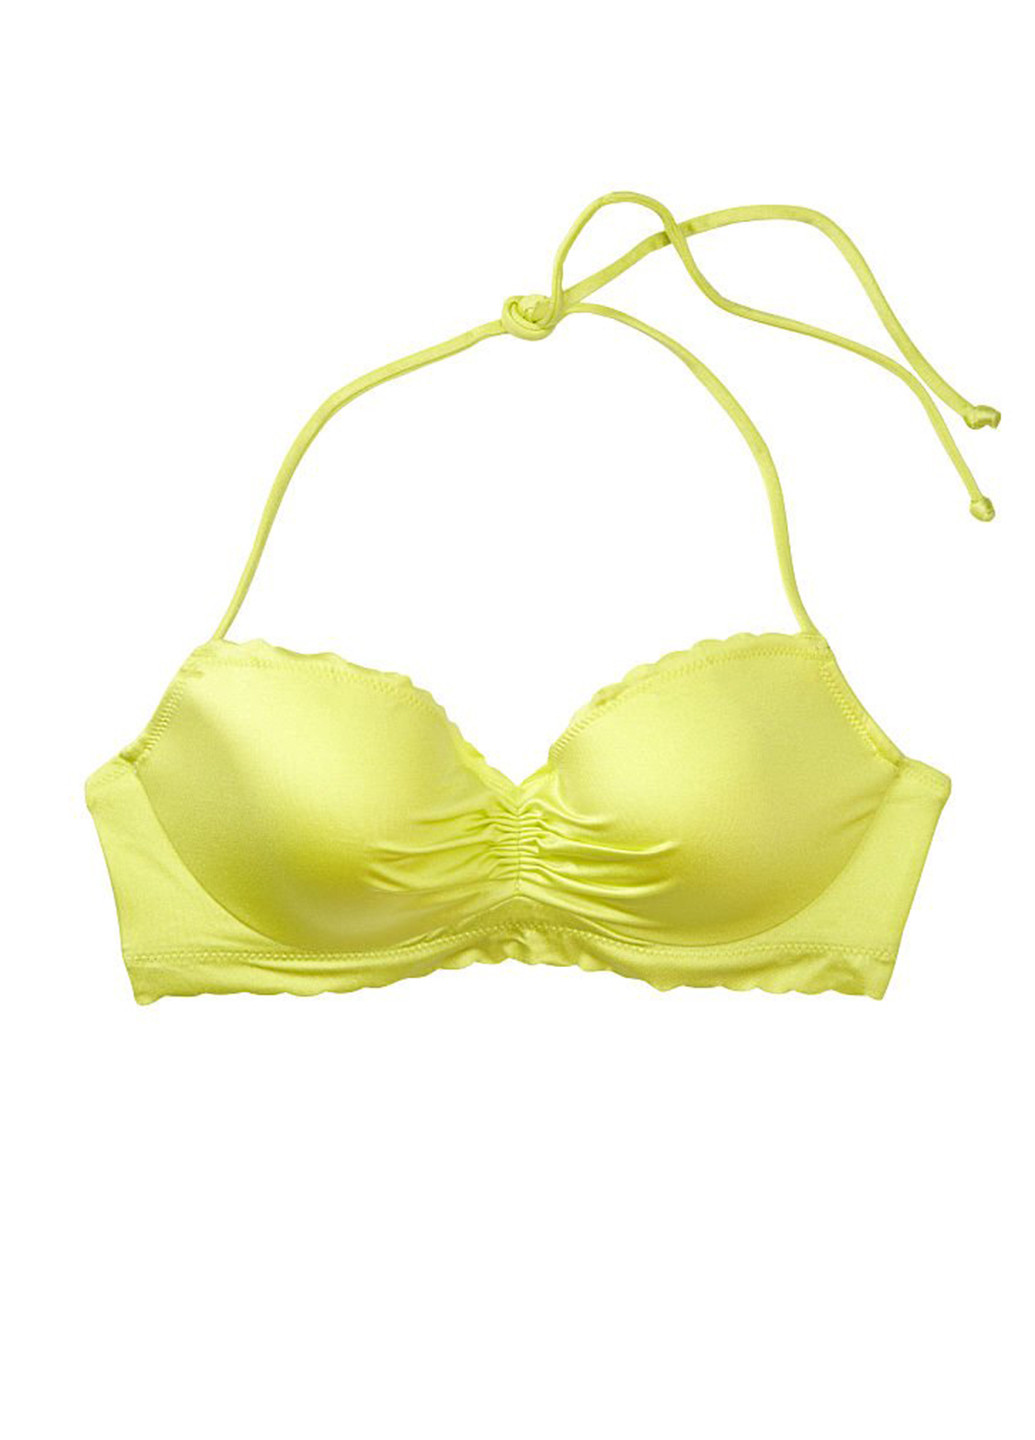 Желтый летний купальник (лиф, трусы) раздельный Victoria's Secret